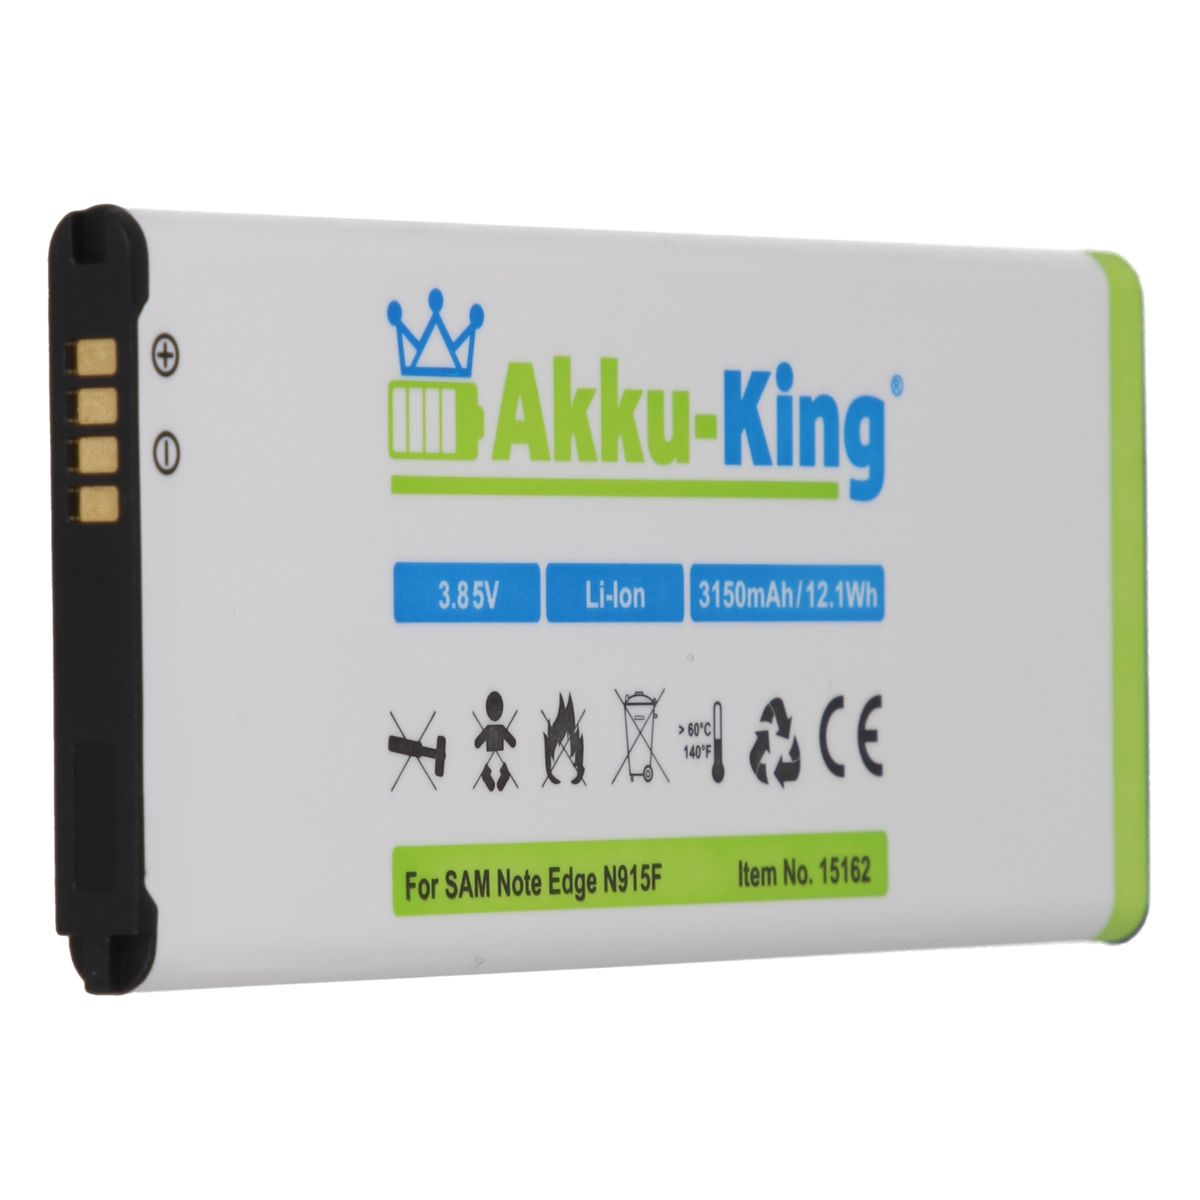 EB-BN915BBC Volt, Handy-Akku, Li-Ion Samsung AKKU-KING kompatibel mit 3.8 3150mAh Akku